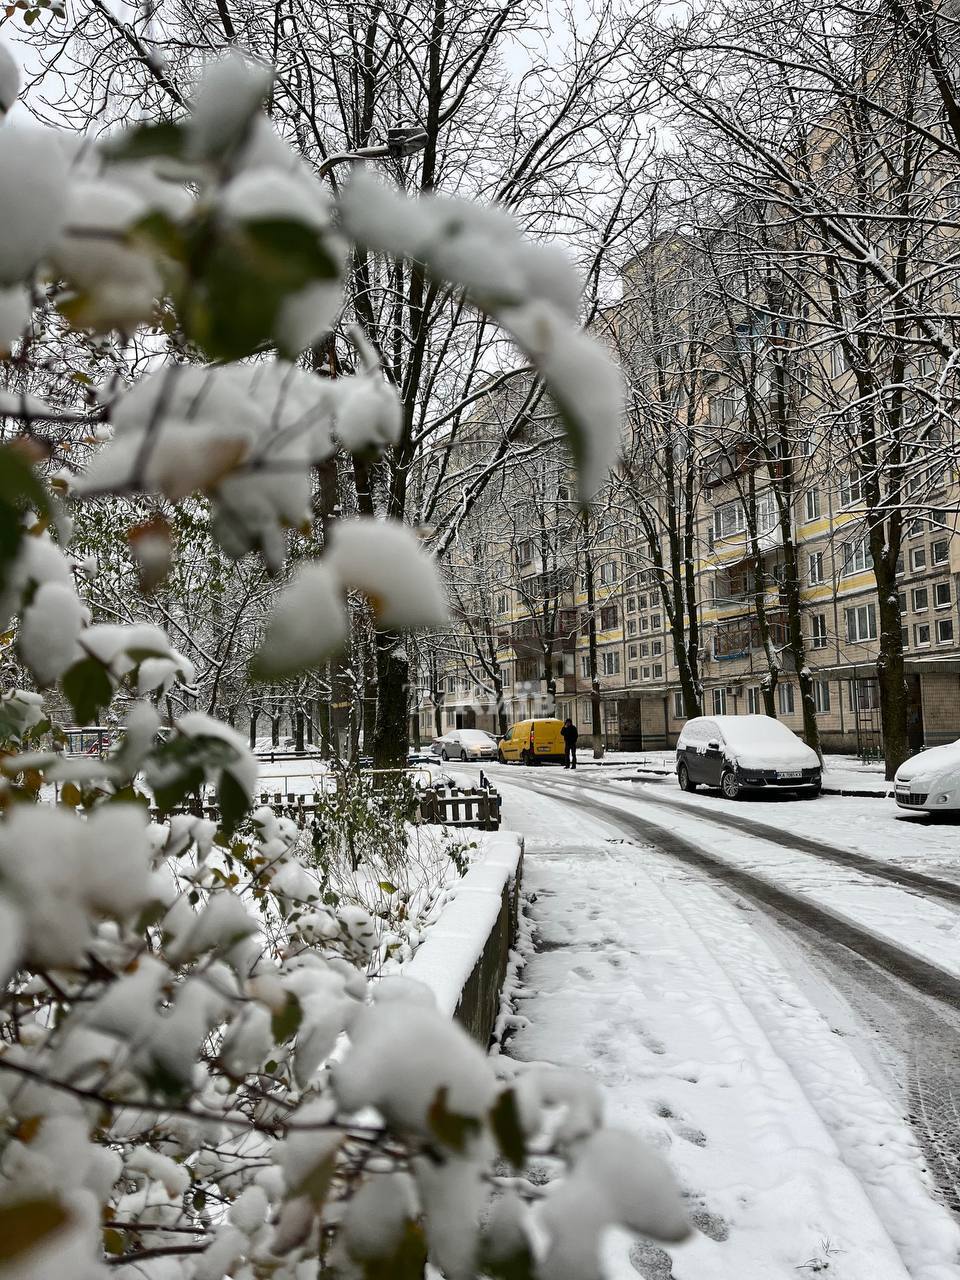 У Київ прийшла справжня зима: дороги засипало снігом, водіїв попередили про ожеледицю. Фото і відео